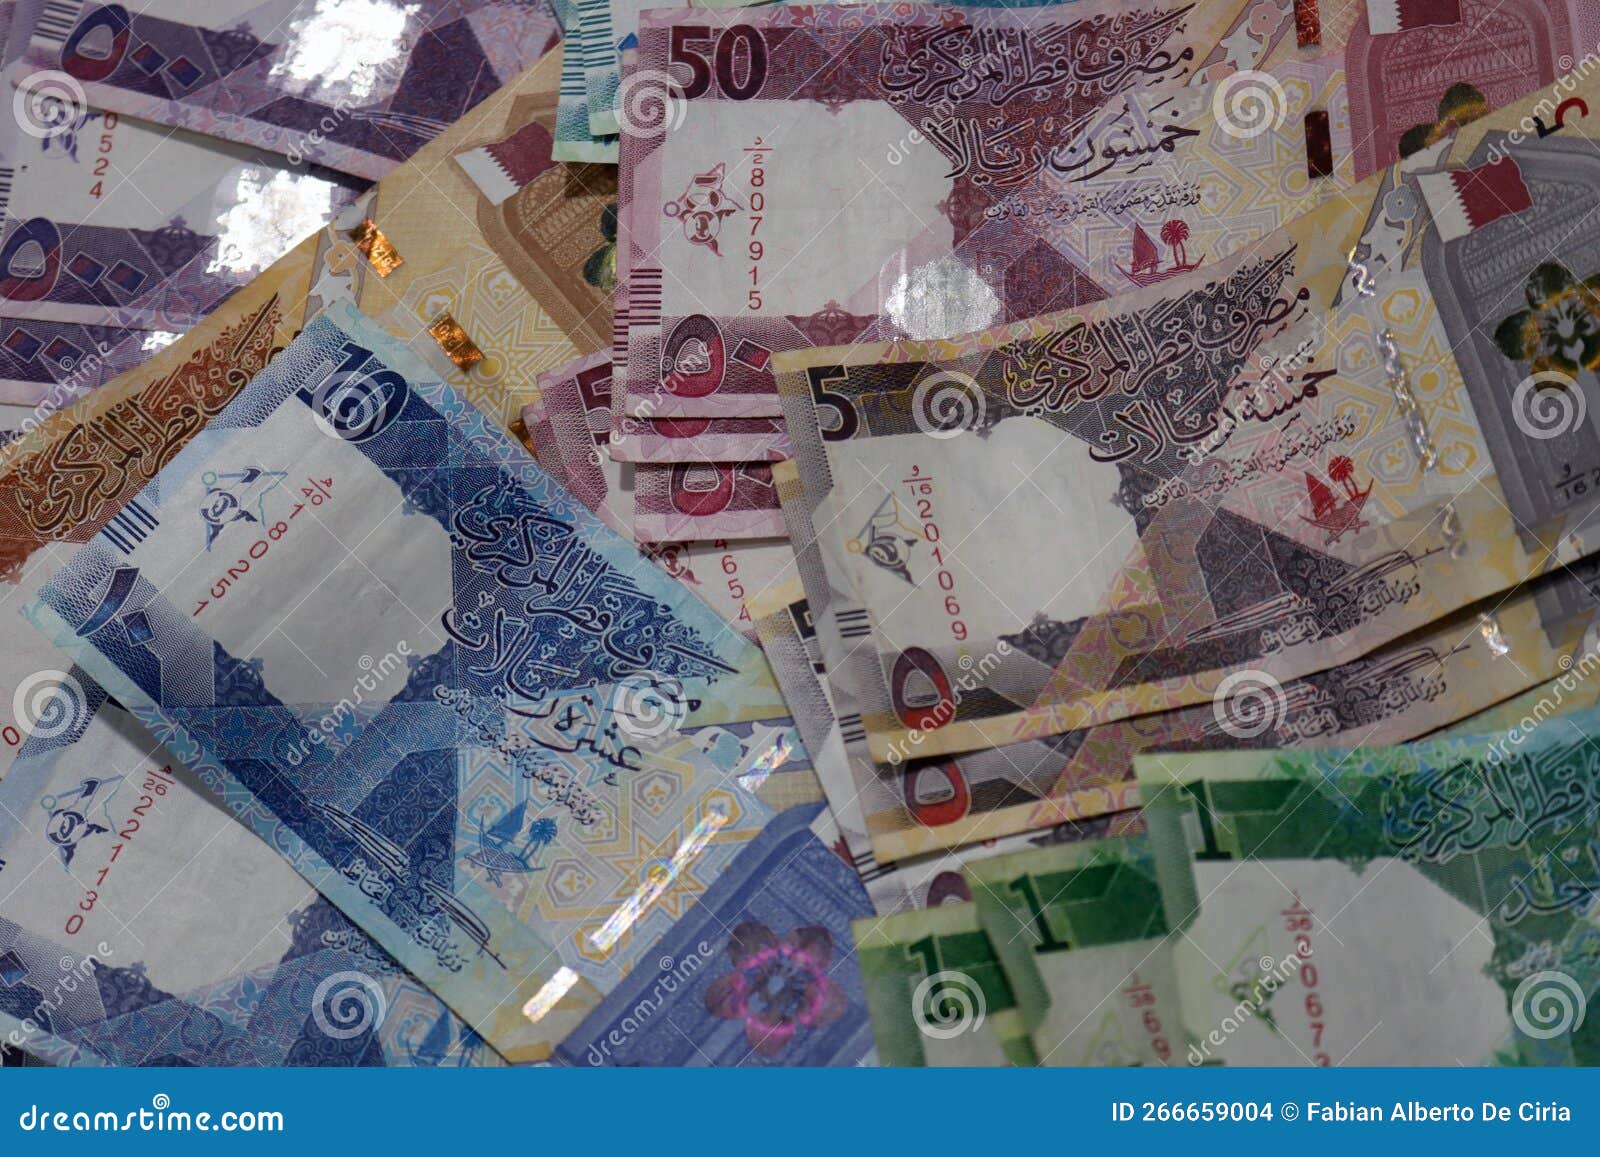 dinero en qatar.